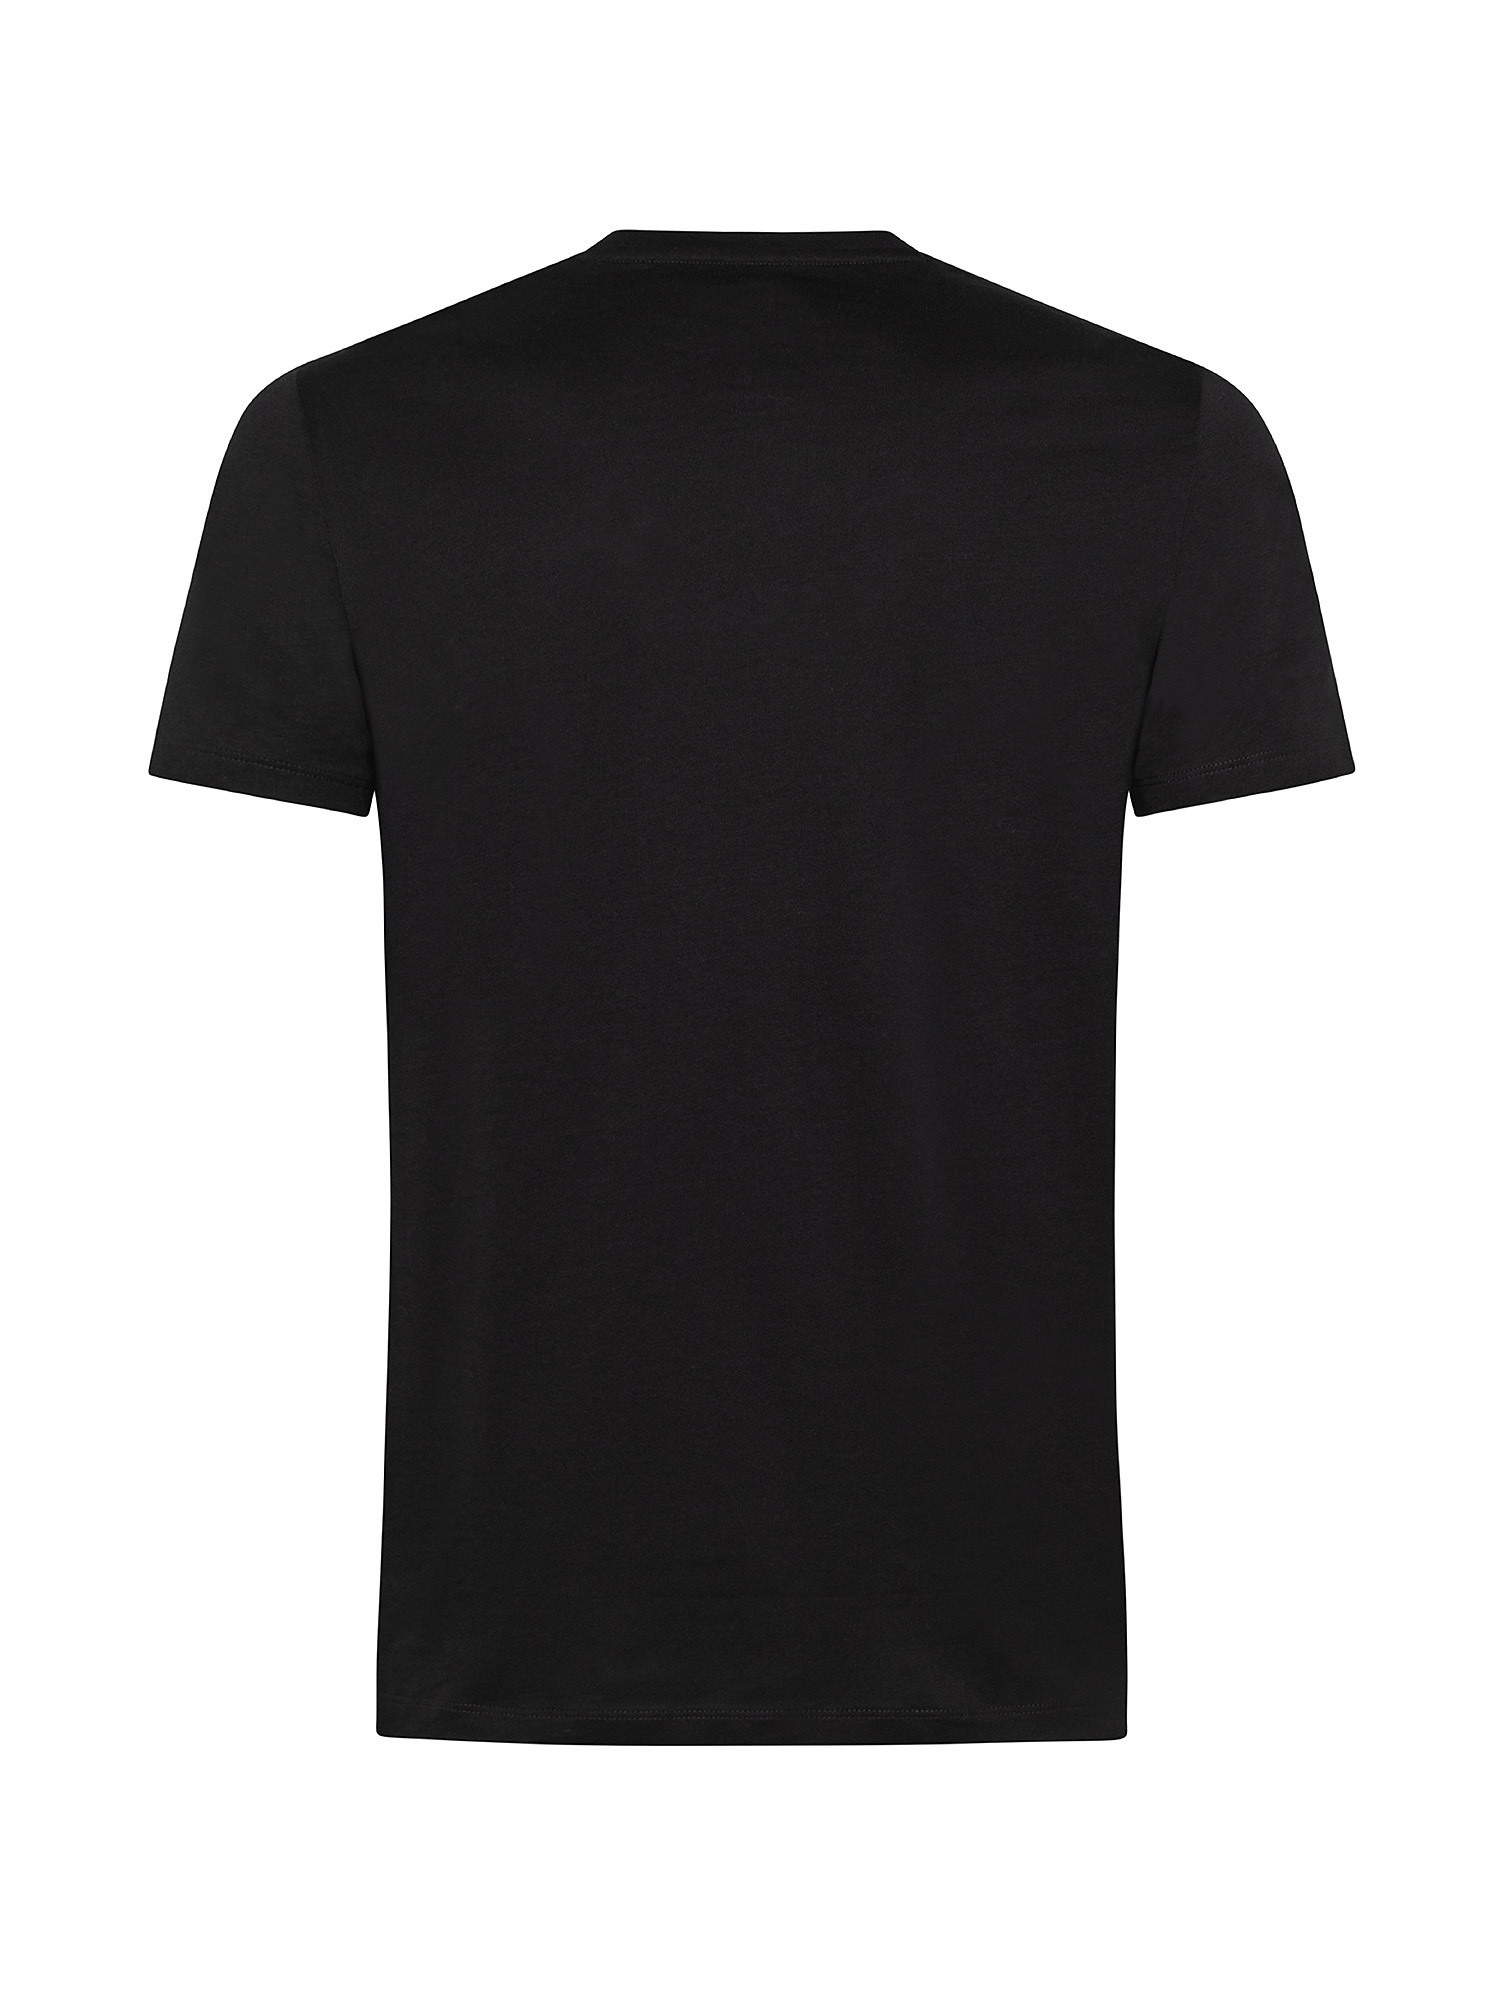 T-shirt, Black, large image number 1